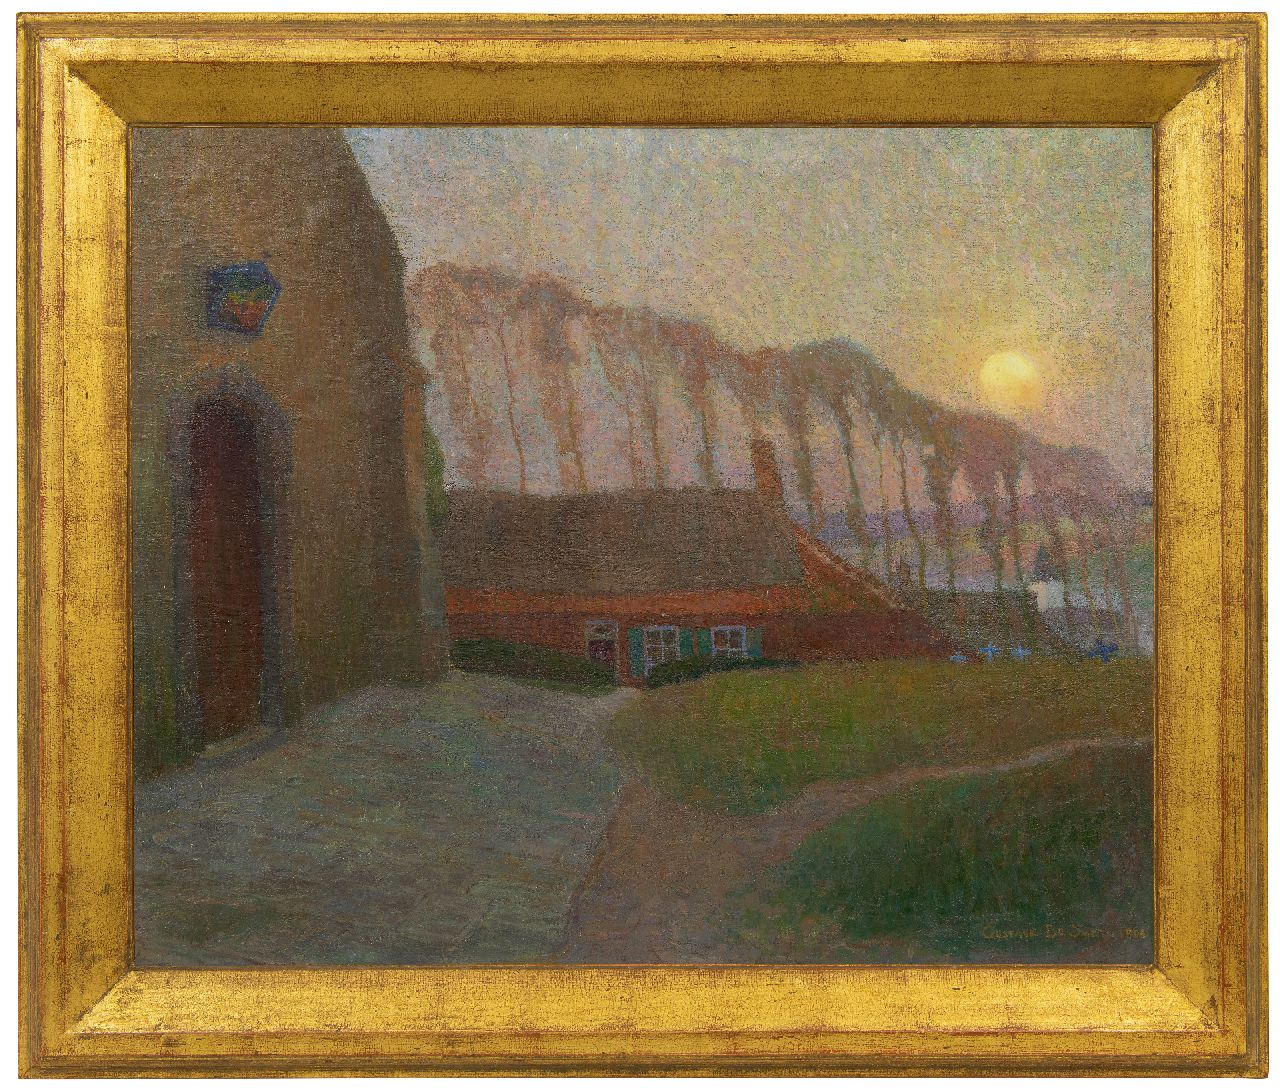 Smet G. de | Gustave de Smet | Schilderijen te koop aangeboden | Landschap met kerk, olieverf op doek op paneel 69,4 x 84,4 cm, gesigneerd rechtsonder en gedateerd 1904